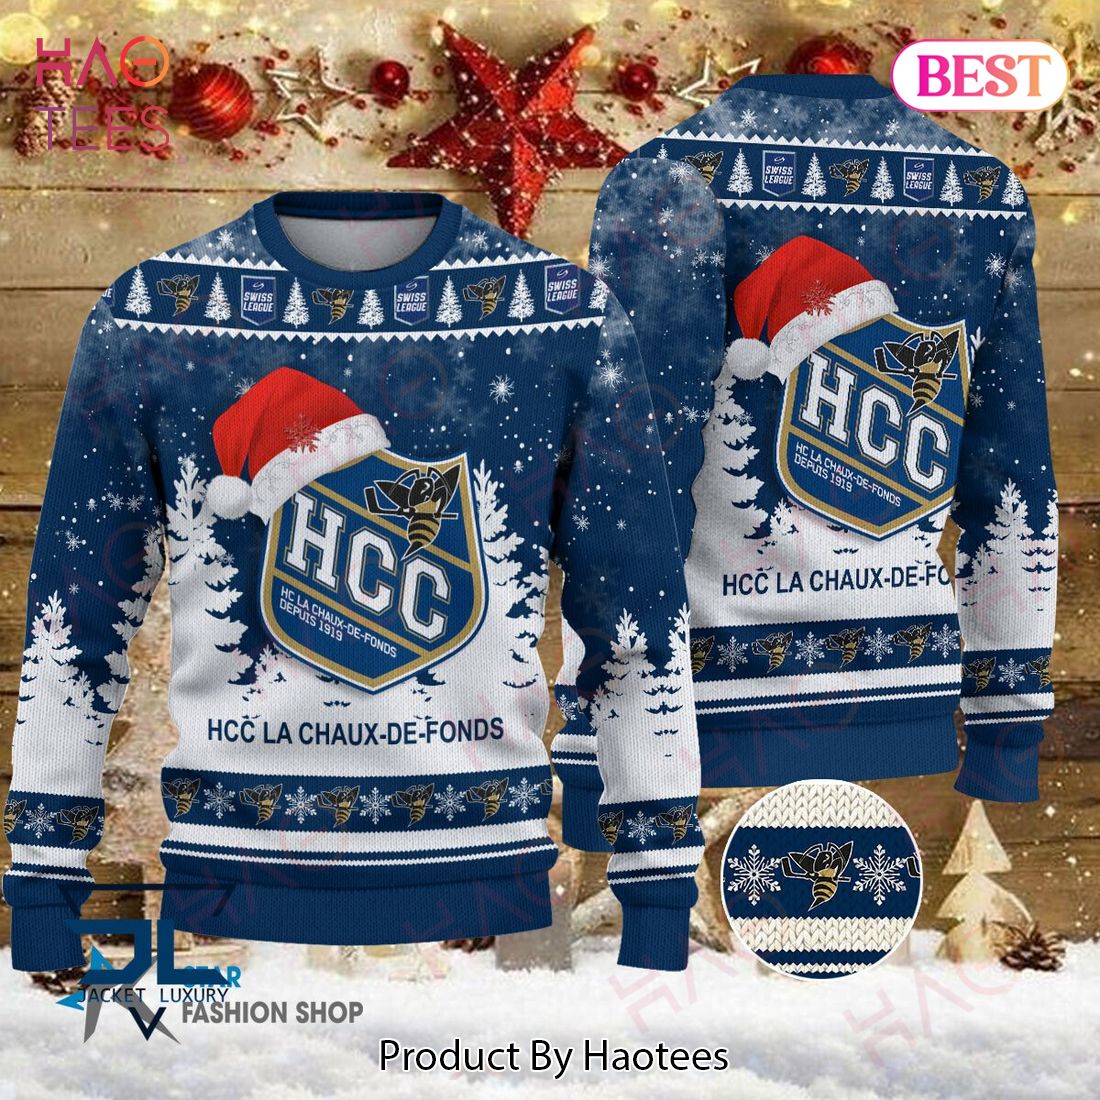 HOT HC La Chaux-De-Fonds Blue Mix White Luxury Brand Sweater Limited Edition